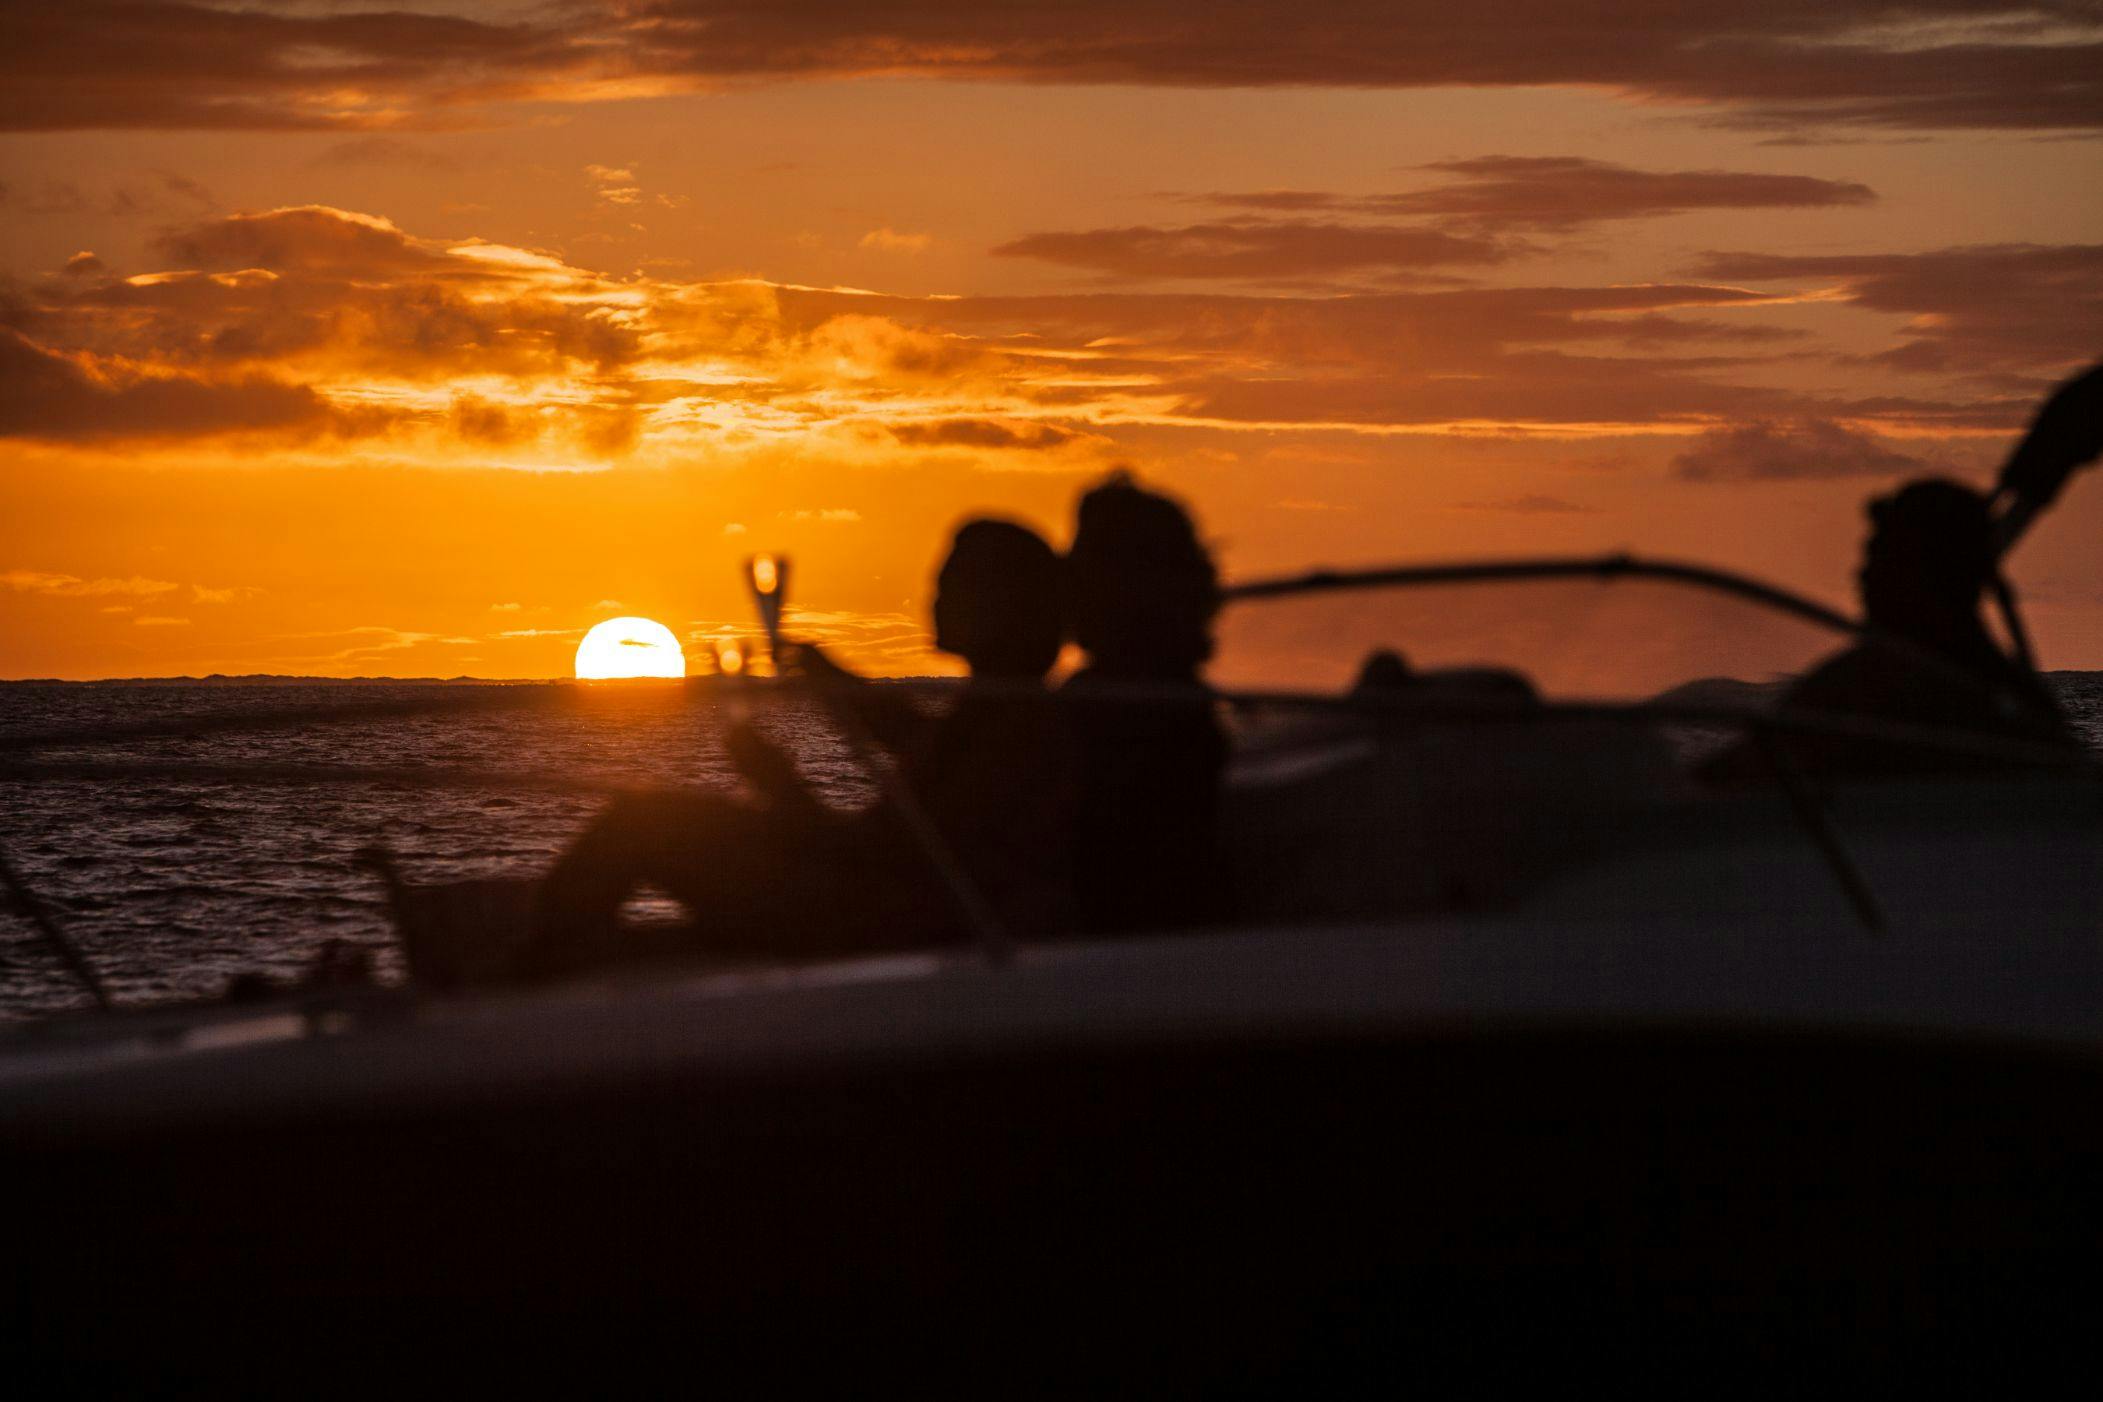 Cruzeiro privado ao pôr do sol em Bora Bora